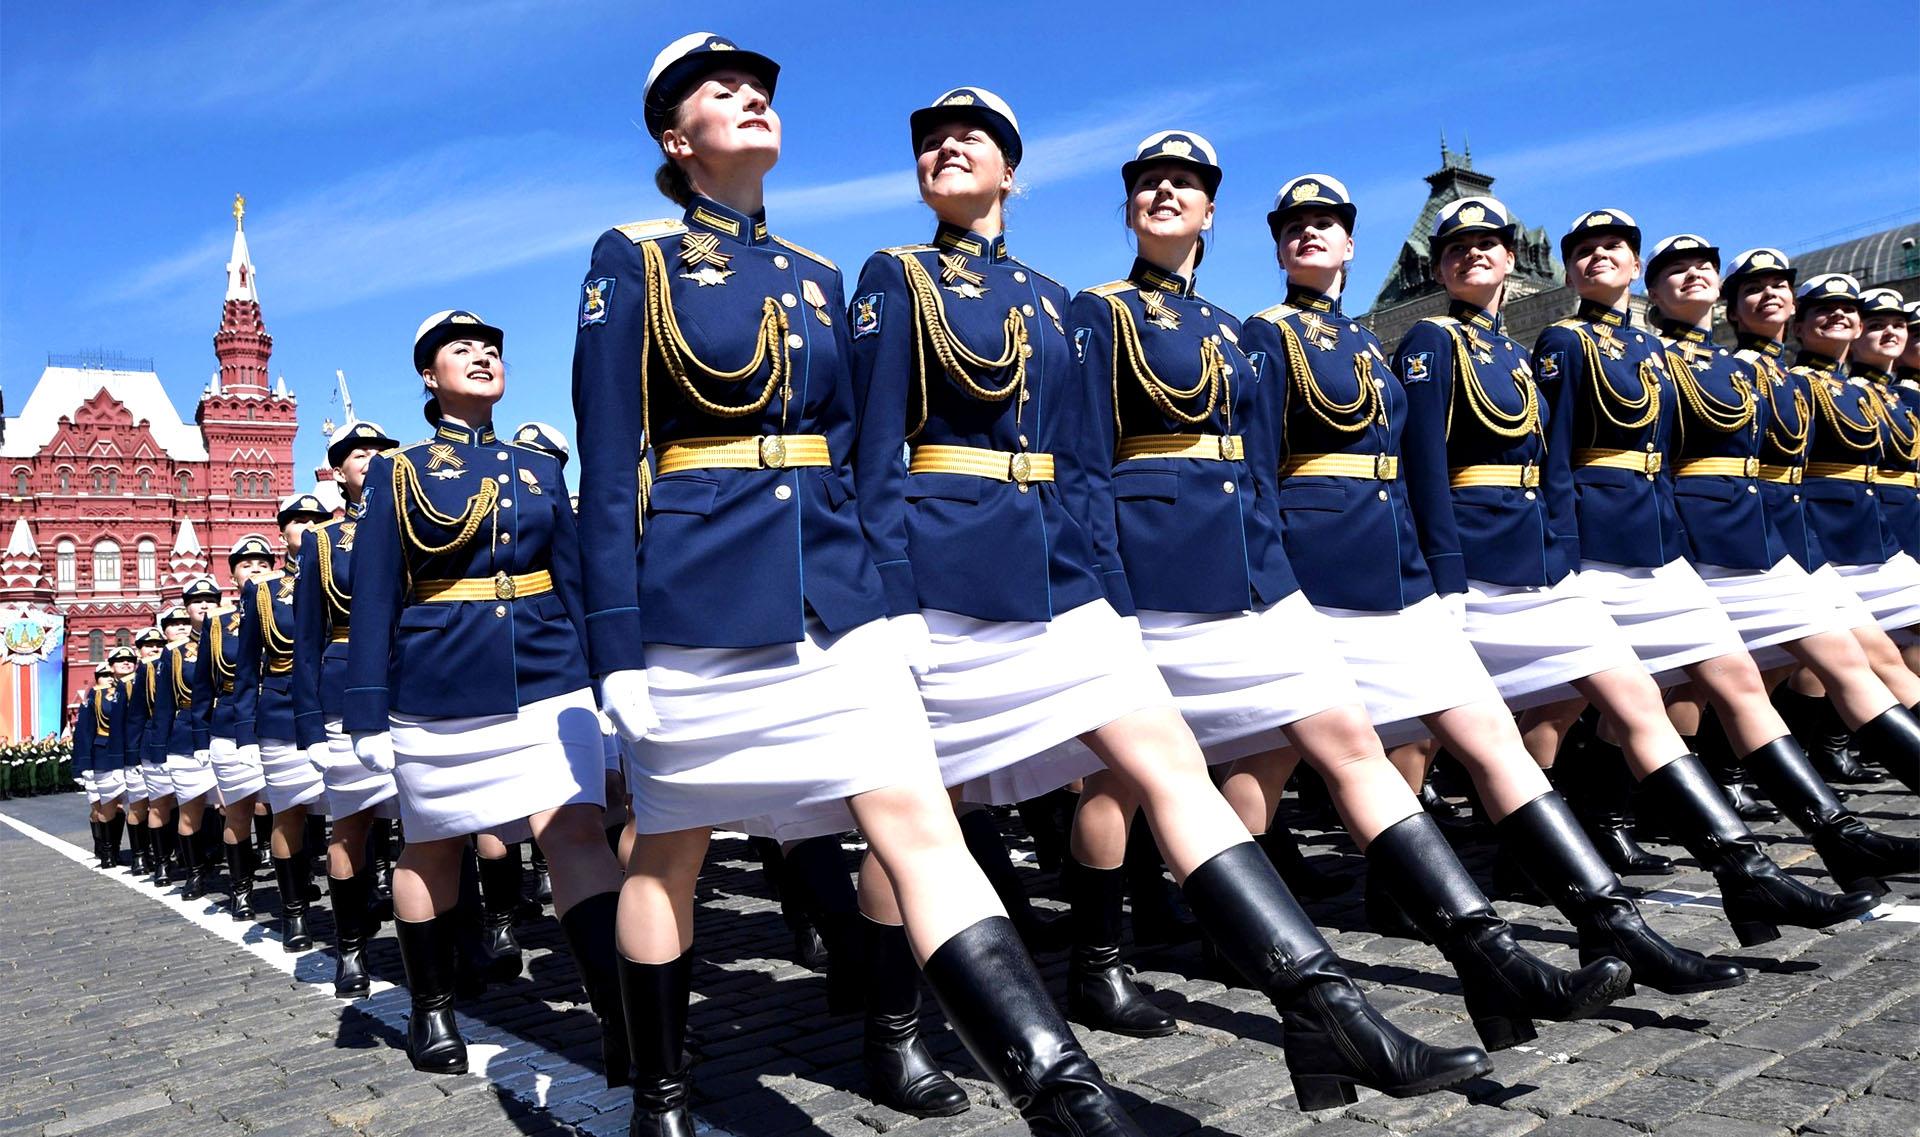 Красная парадная форма. Женская парадная Военная форма. Девушки на параде. Девушки военные на параде. Парадная форма женщин военнослужащих.